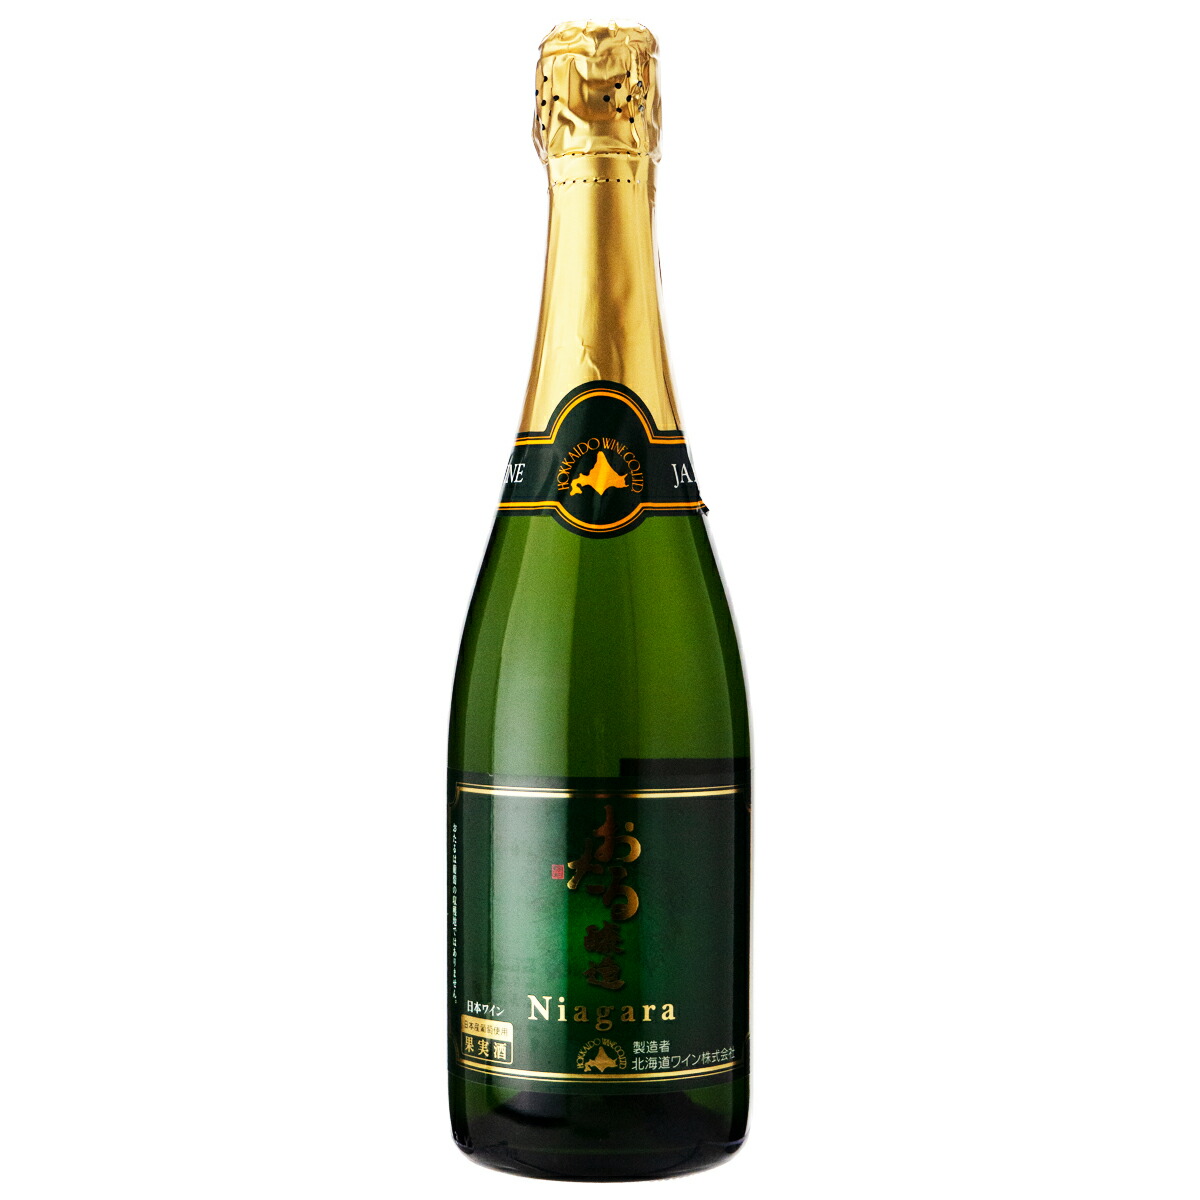 北海道ワイン 北海道ワイン おたるナイヤガラスパークリング NV 720ml 瓶 シャンパン・スパークリングワインの商品画像